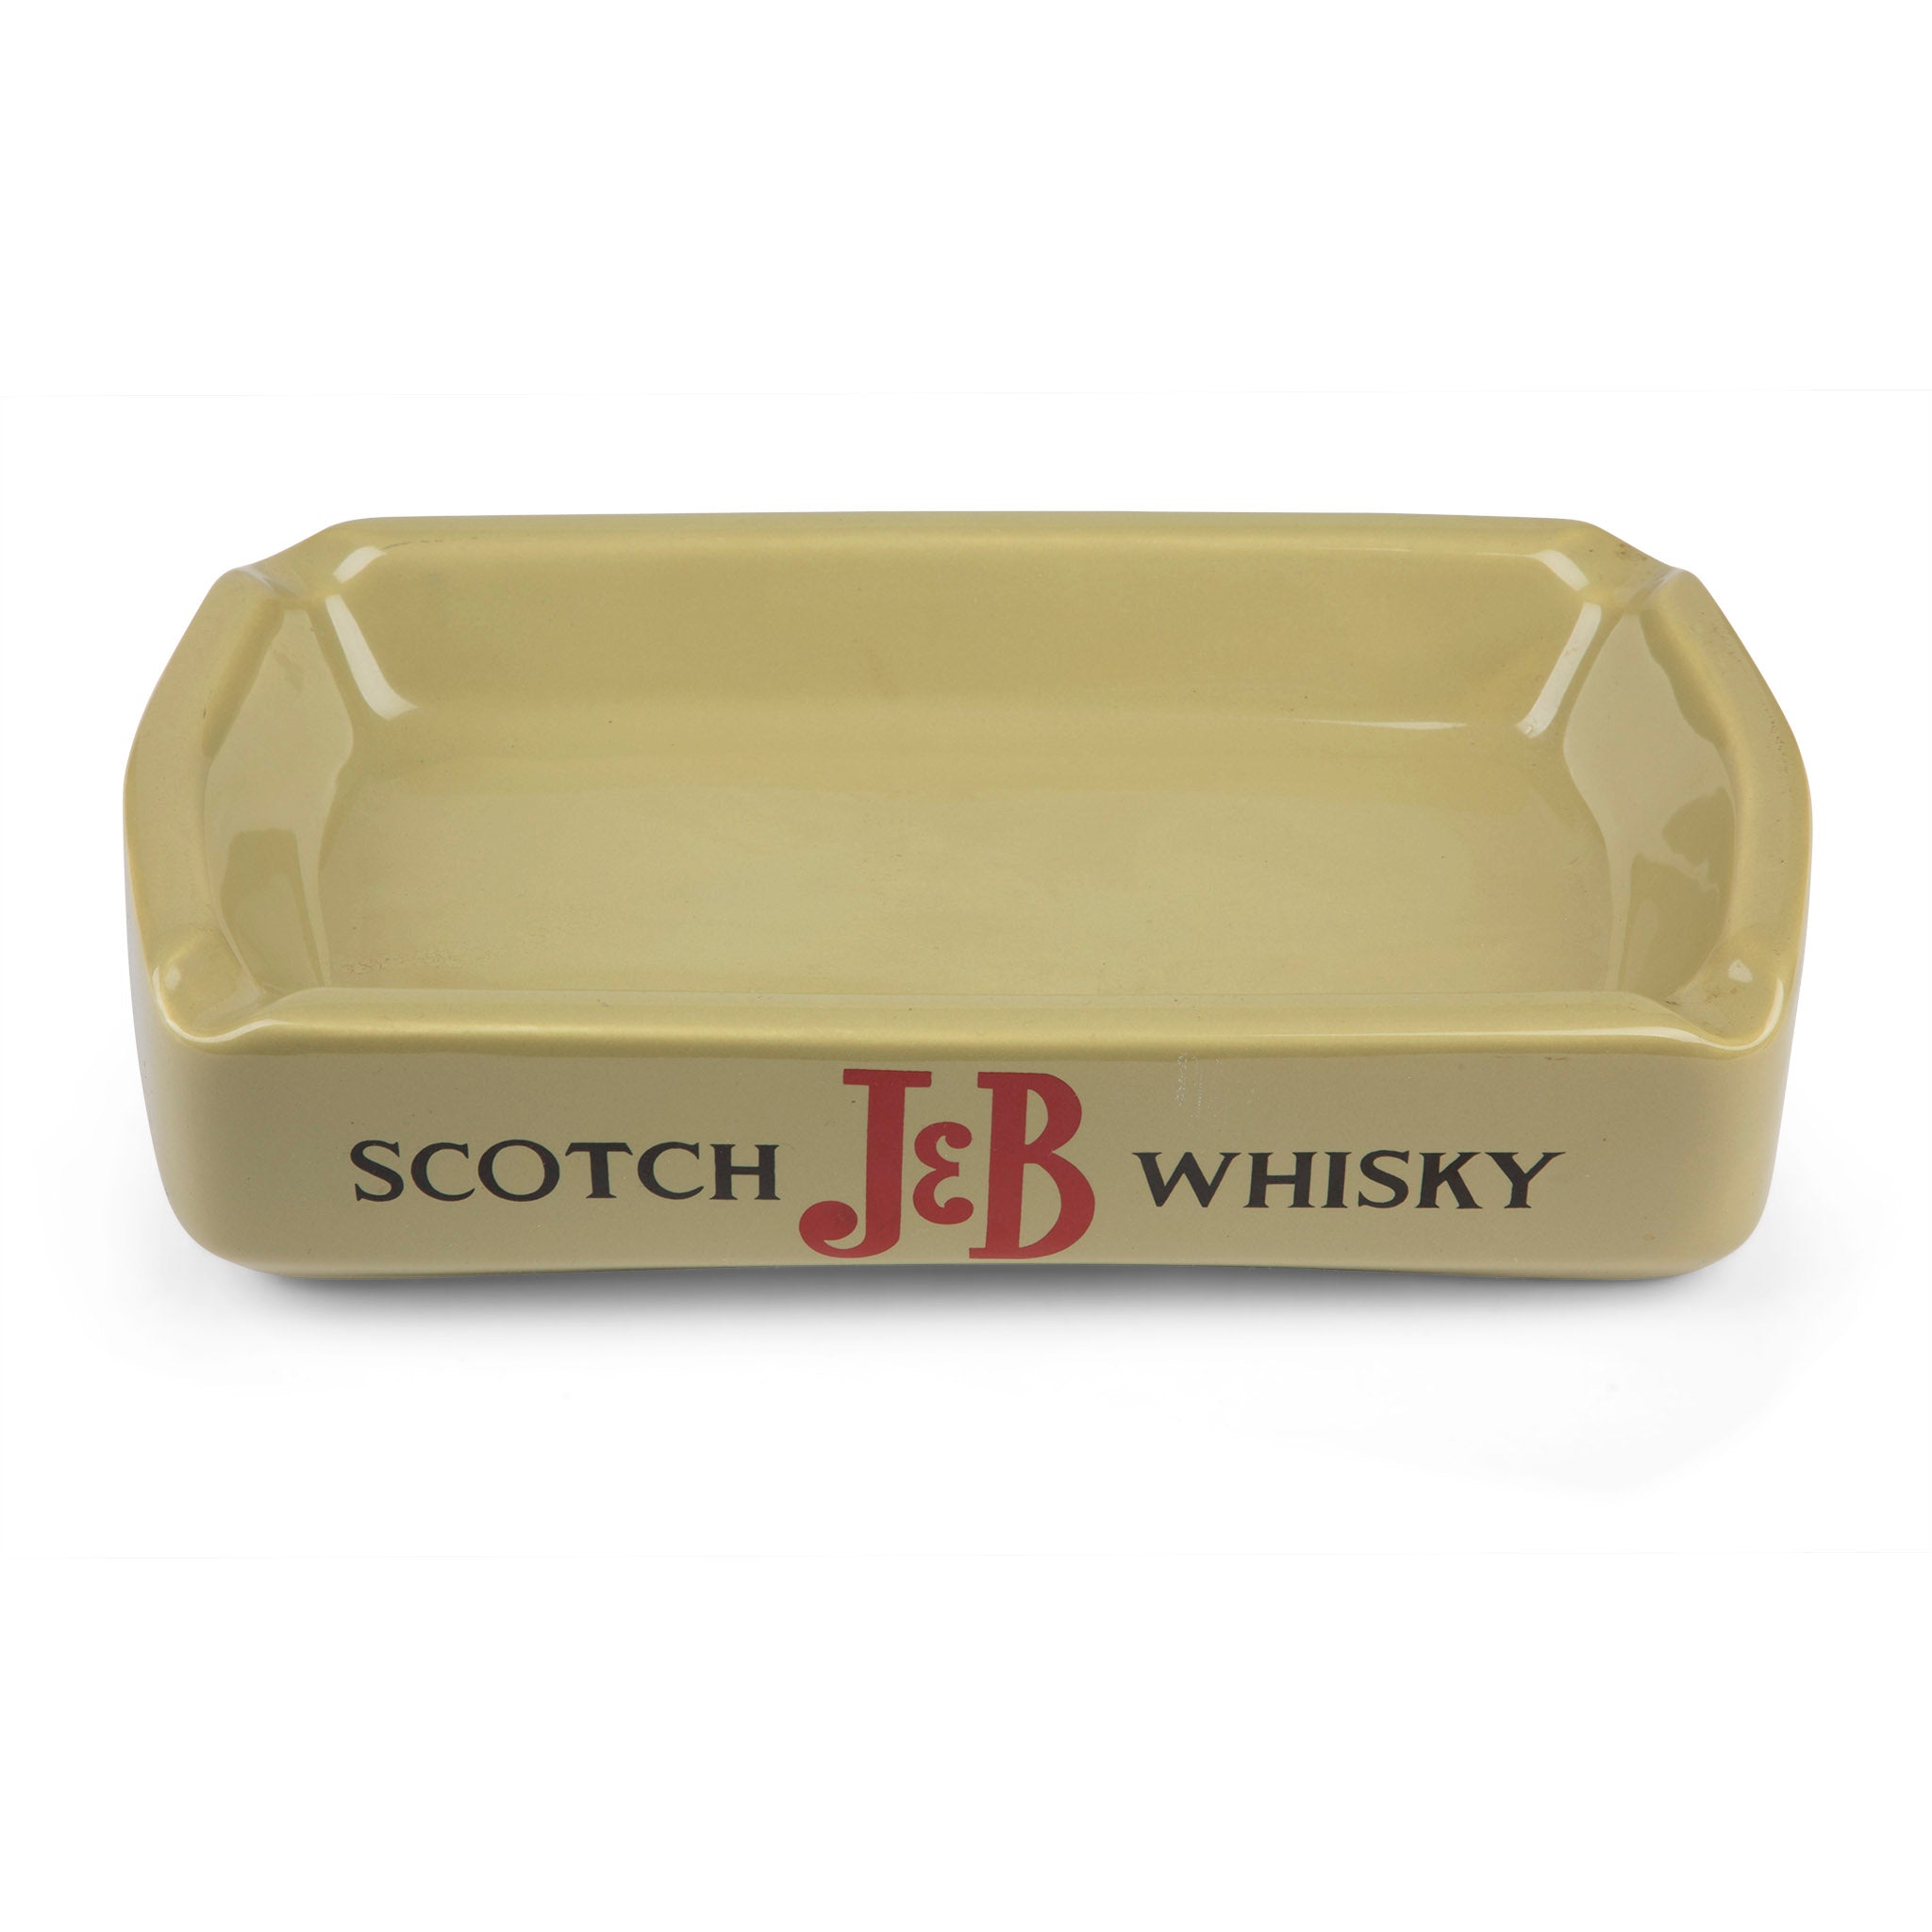 Vintage J&B Scotch Whisky Advertising Ashtray